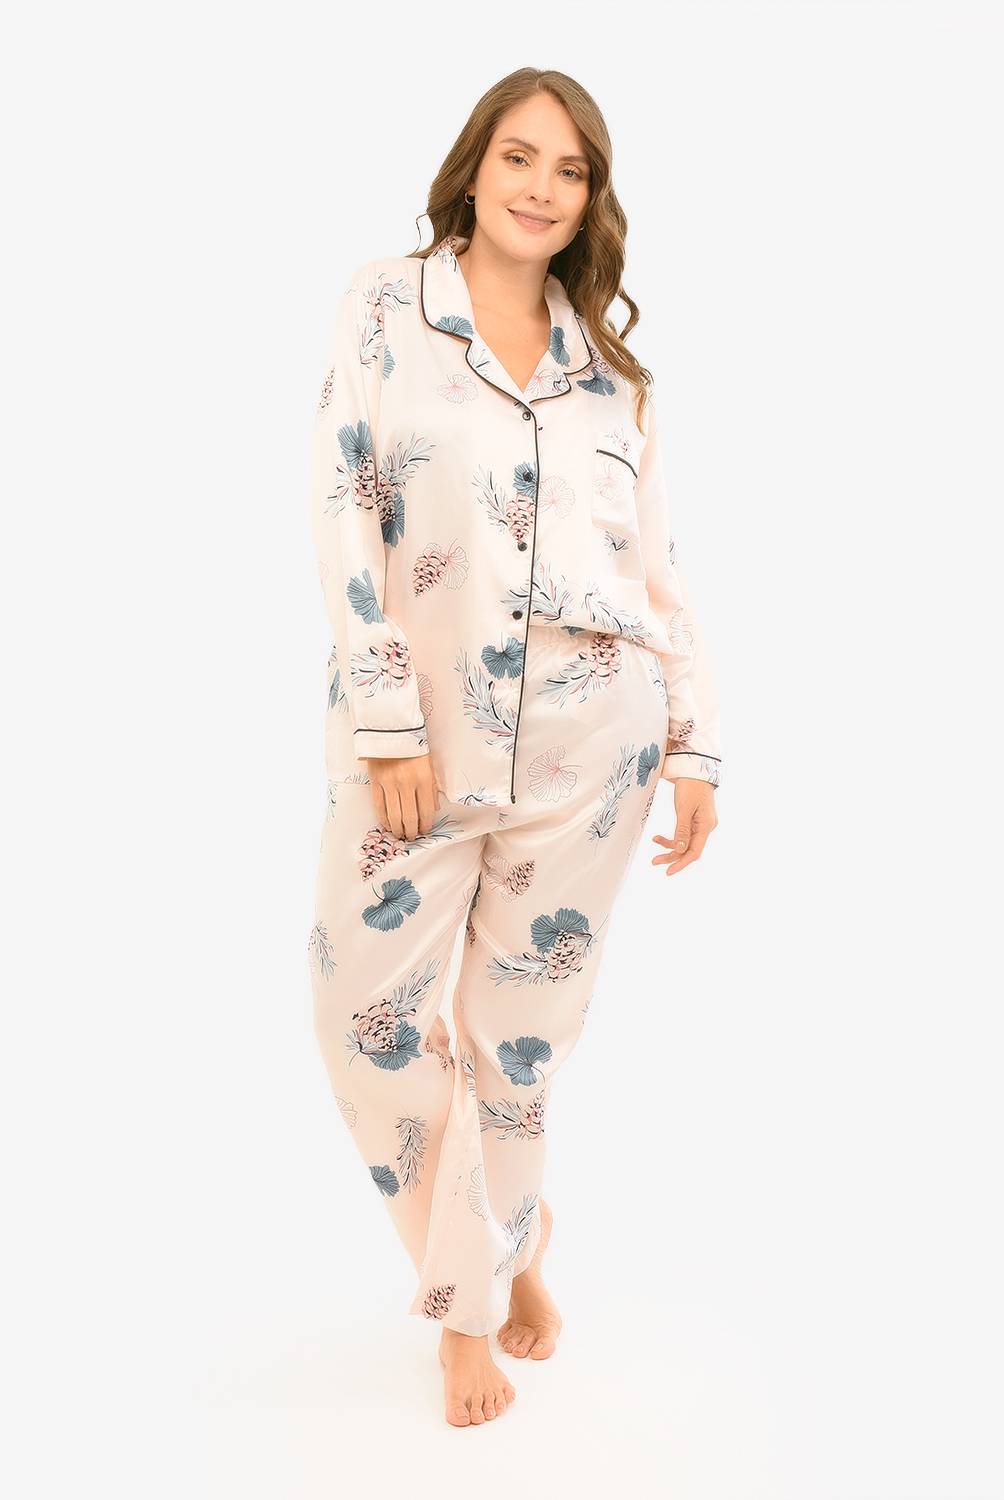 DAHLA - Dahla Pijama Mujer